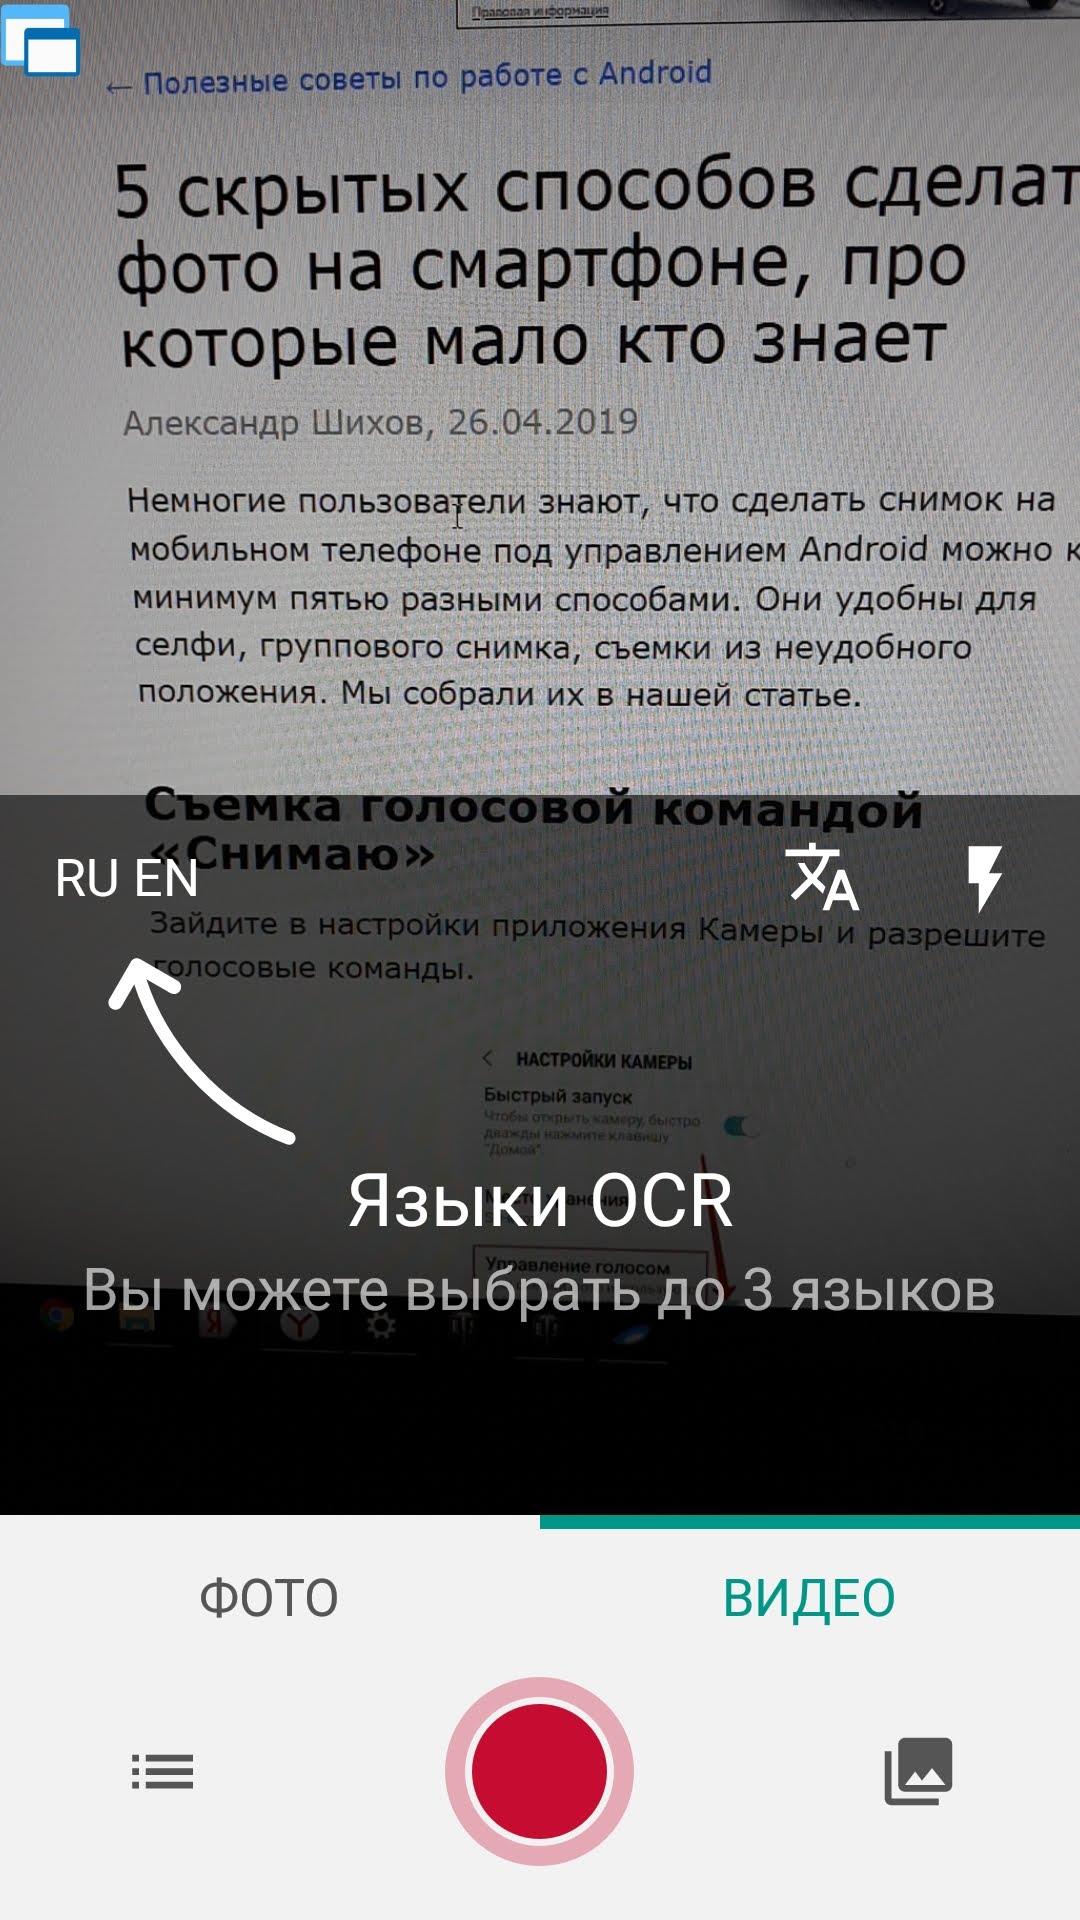 Программа для распознавания текста с фото для iphone